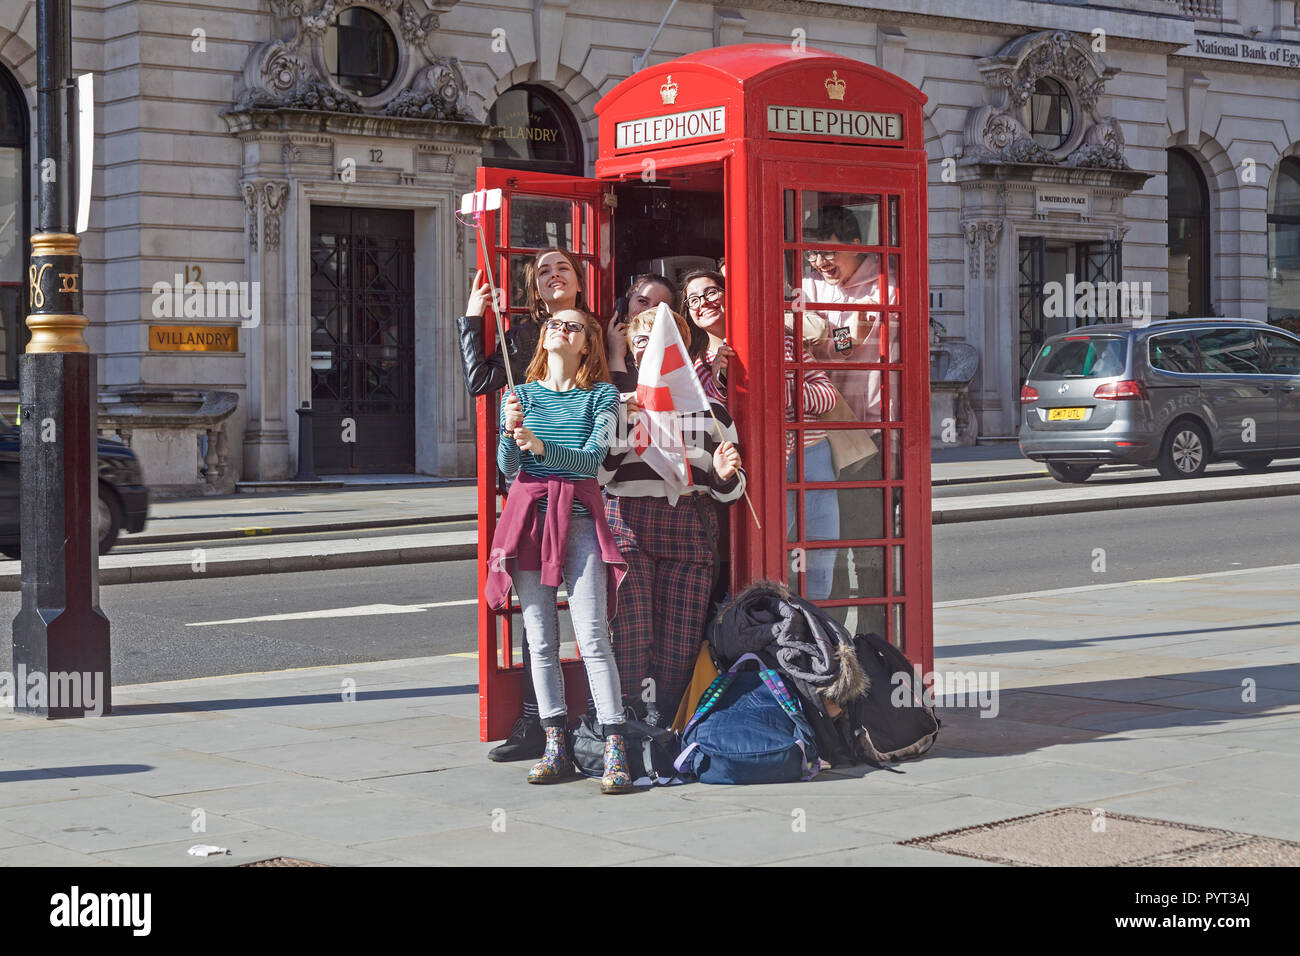 Una parte de las hembras jóvenes turistas tomando un selfie después de probar la capacidad de un teléfono rojo tradicional cuadro en Londres Waterloo Place. Foto de stock